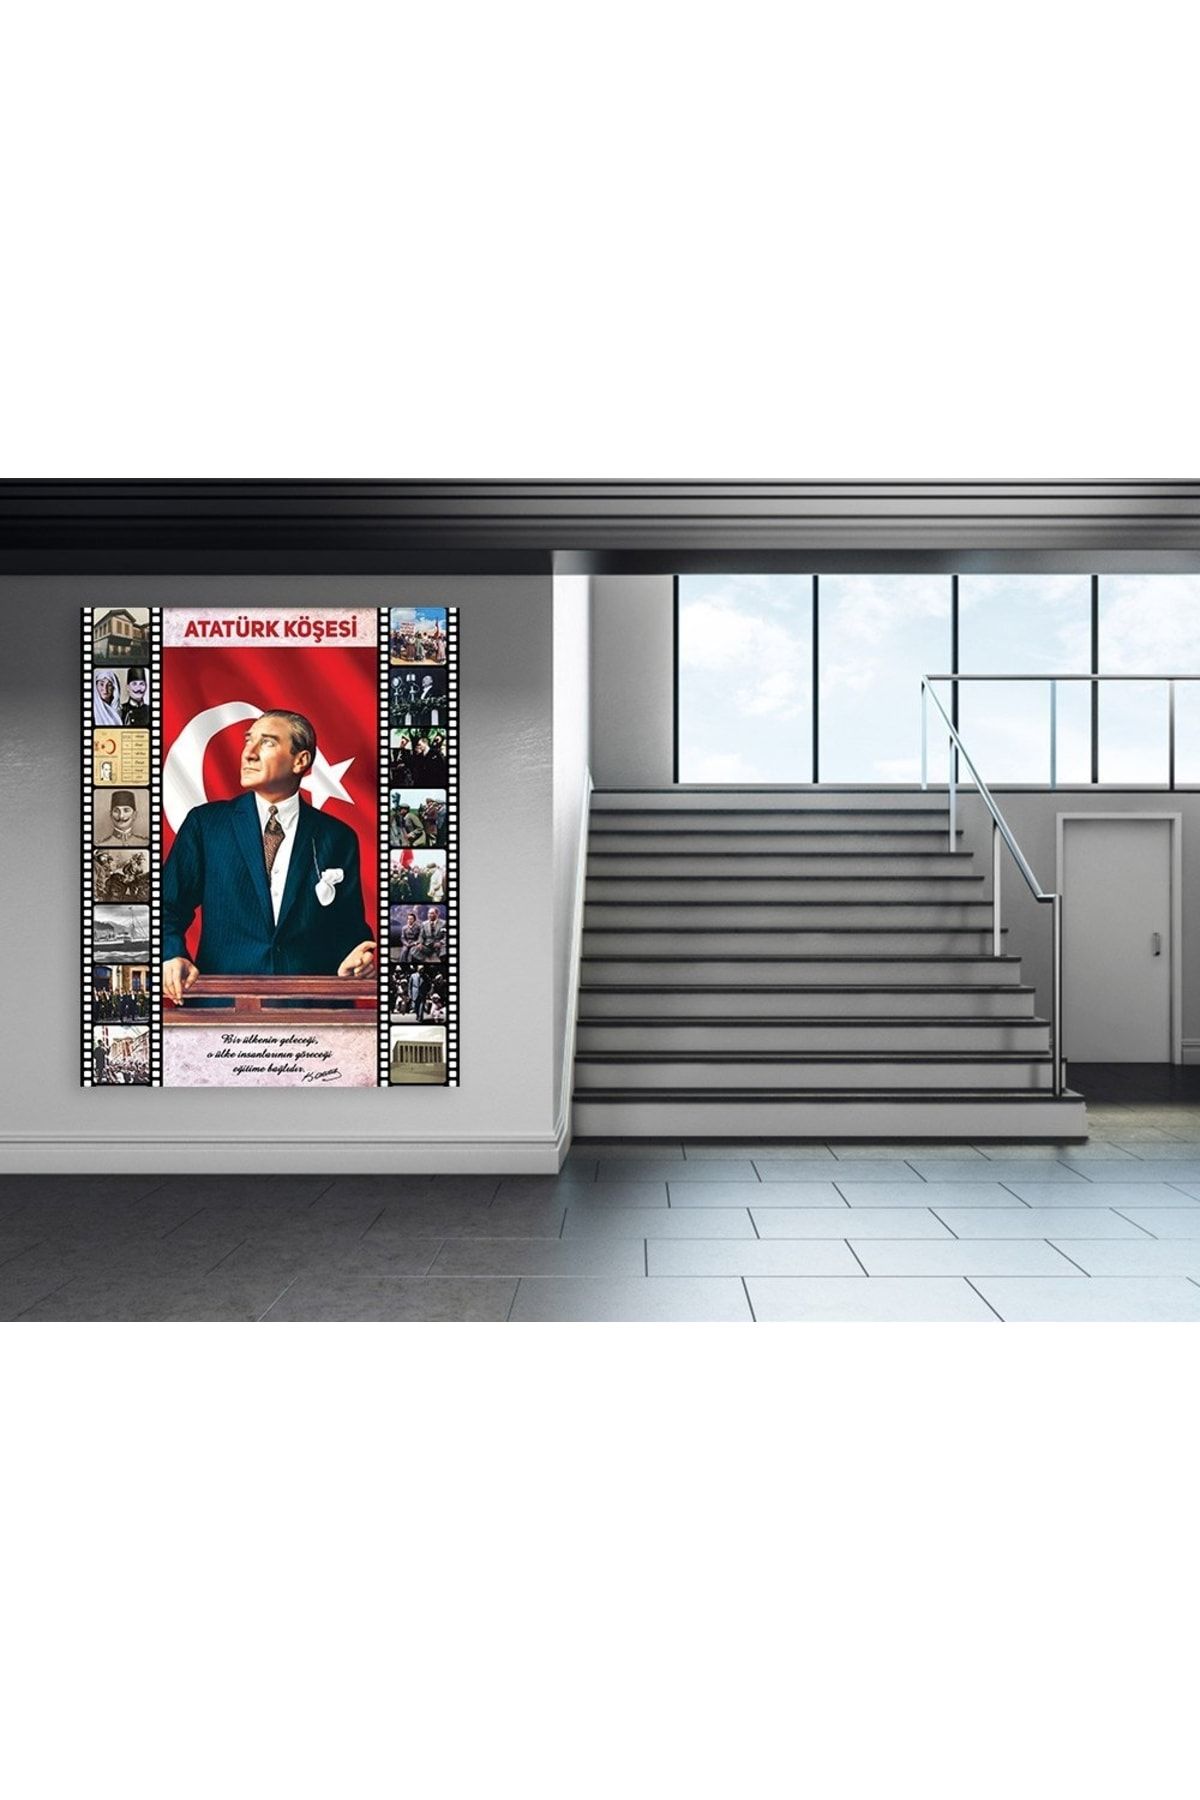 okul posterleri Atatürk Köşesi 4 Okul Posteri 100x135 cm